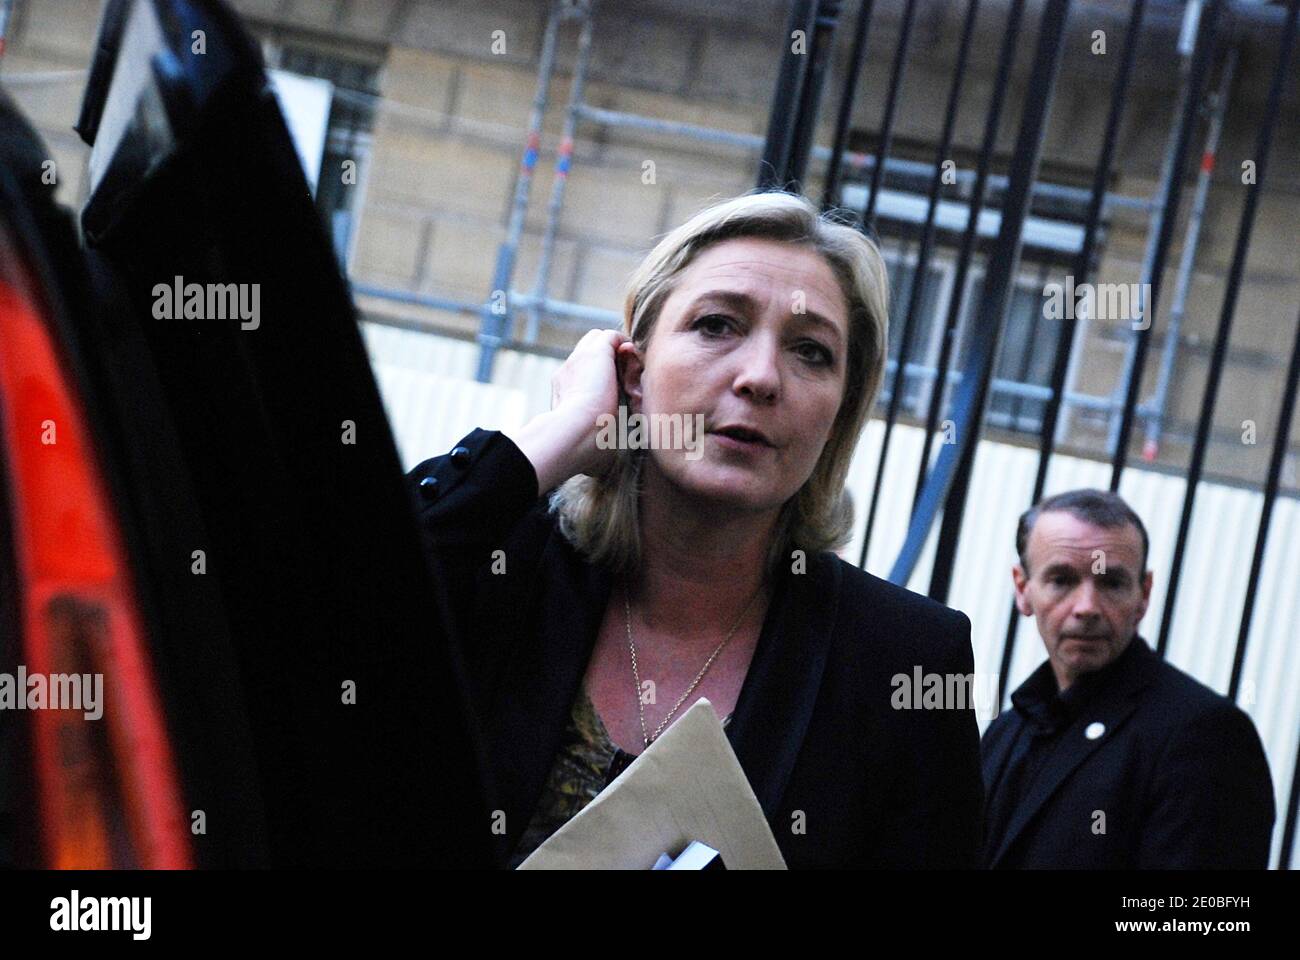 Marine Le Pen, Präsidentin der rechtsextremen Partei Front National (FN) und Kandidatin für die französische Präsidentschaftswahl 2012, nimmt am 24. März 2012 am SIEL-Kongress in Paris Teil. Foto von Marella Barnera/ABACAPRESS.COM Stockfoto